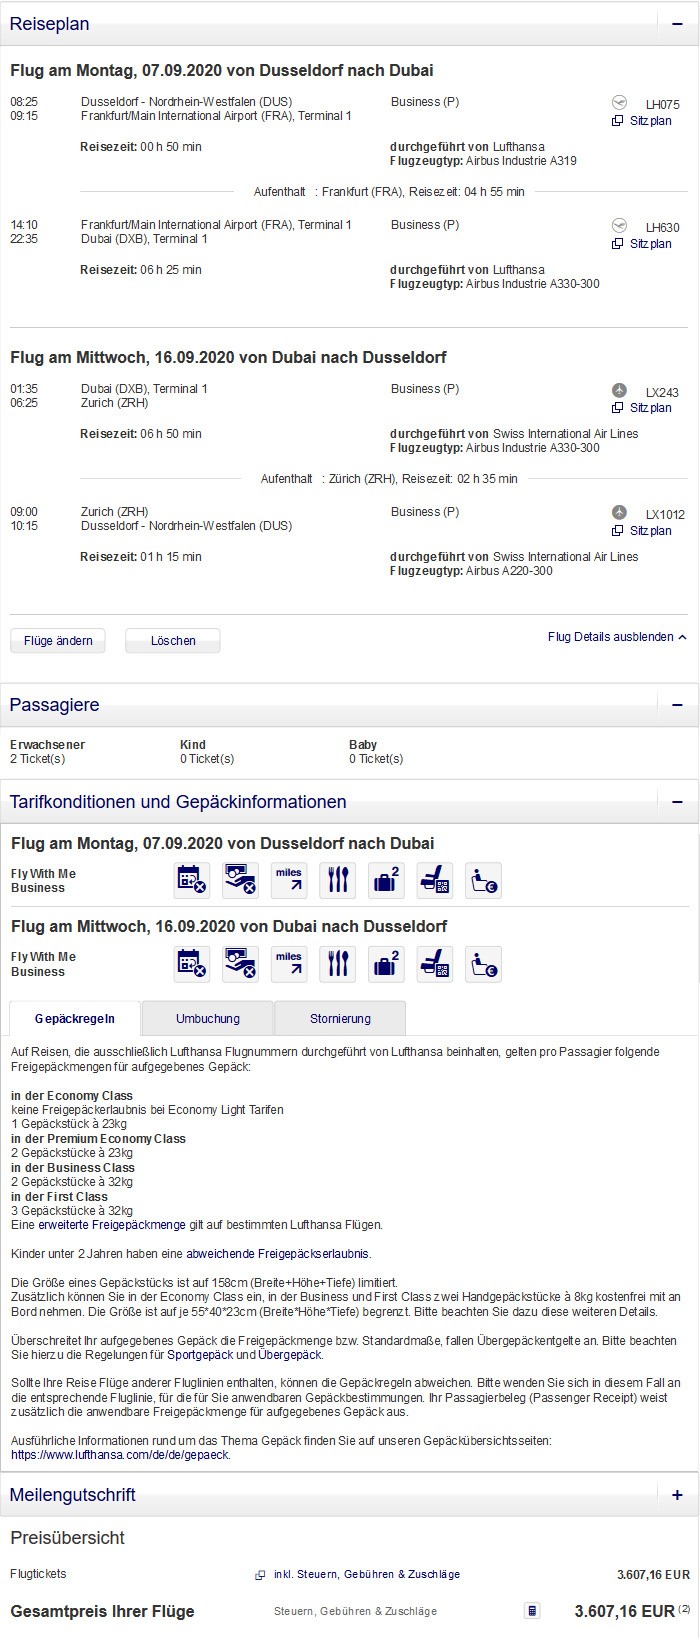 Preisbeispiel für Partnertarif von Düsseldorf nach Bogota in der Lufthansa Business-Class